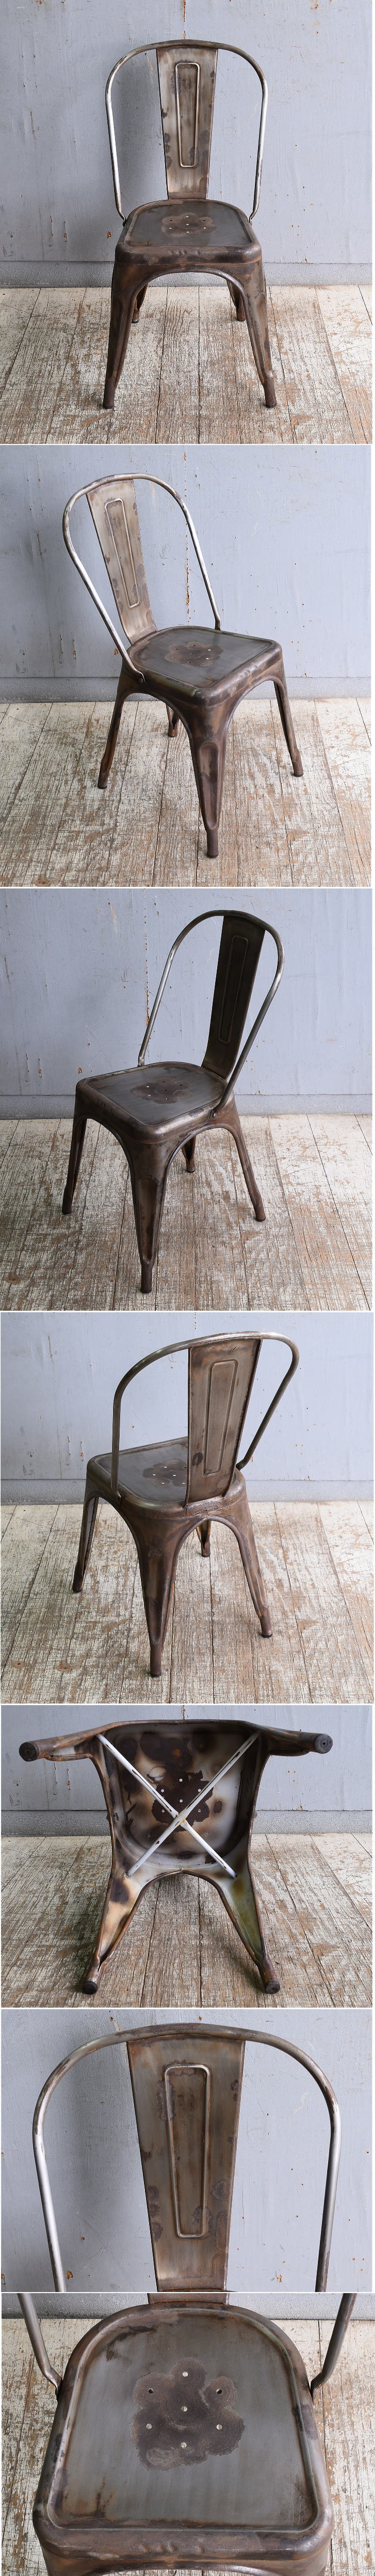 イギリス アンティーク カフェチェア スタッキングチェア 椅子 11050